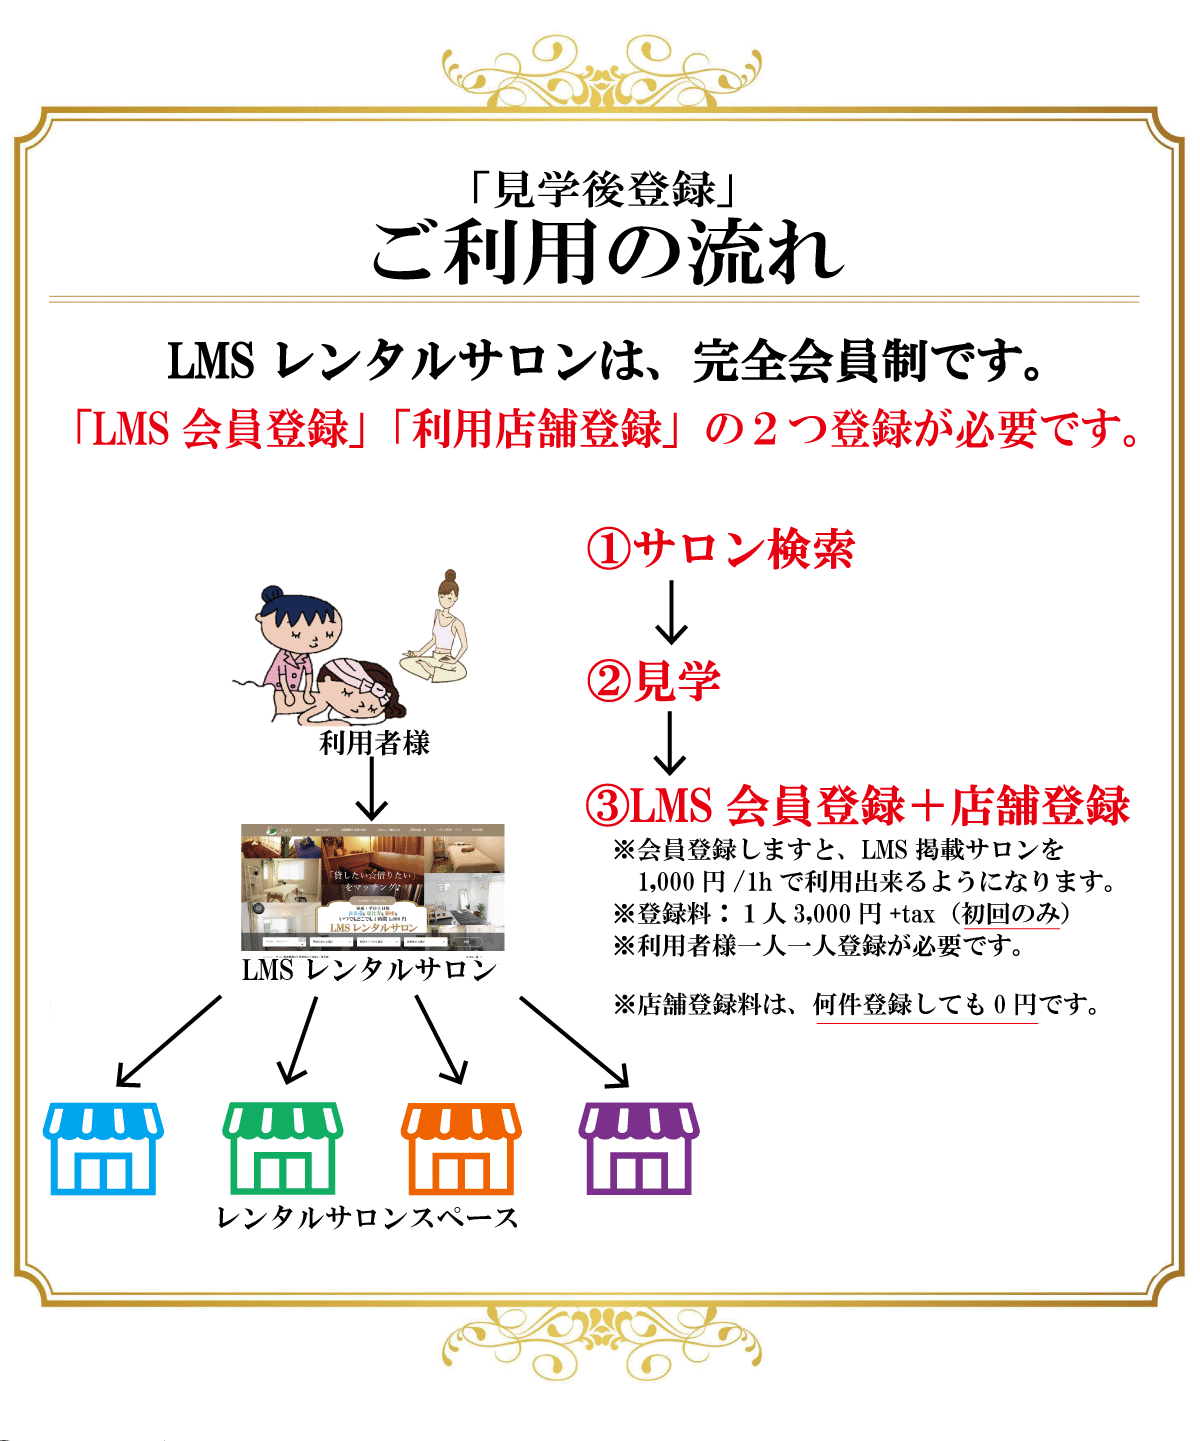 レンタルサロンエステ開業埼玉浦和駅安人気